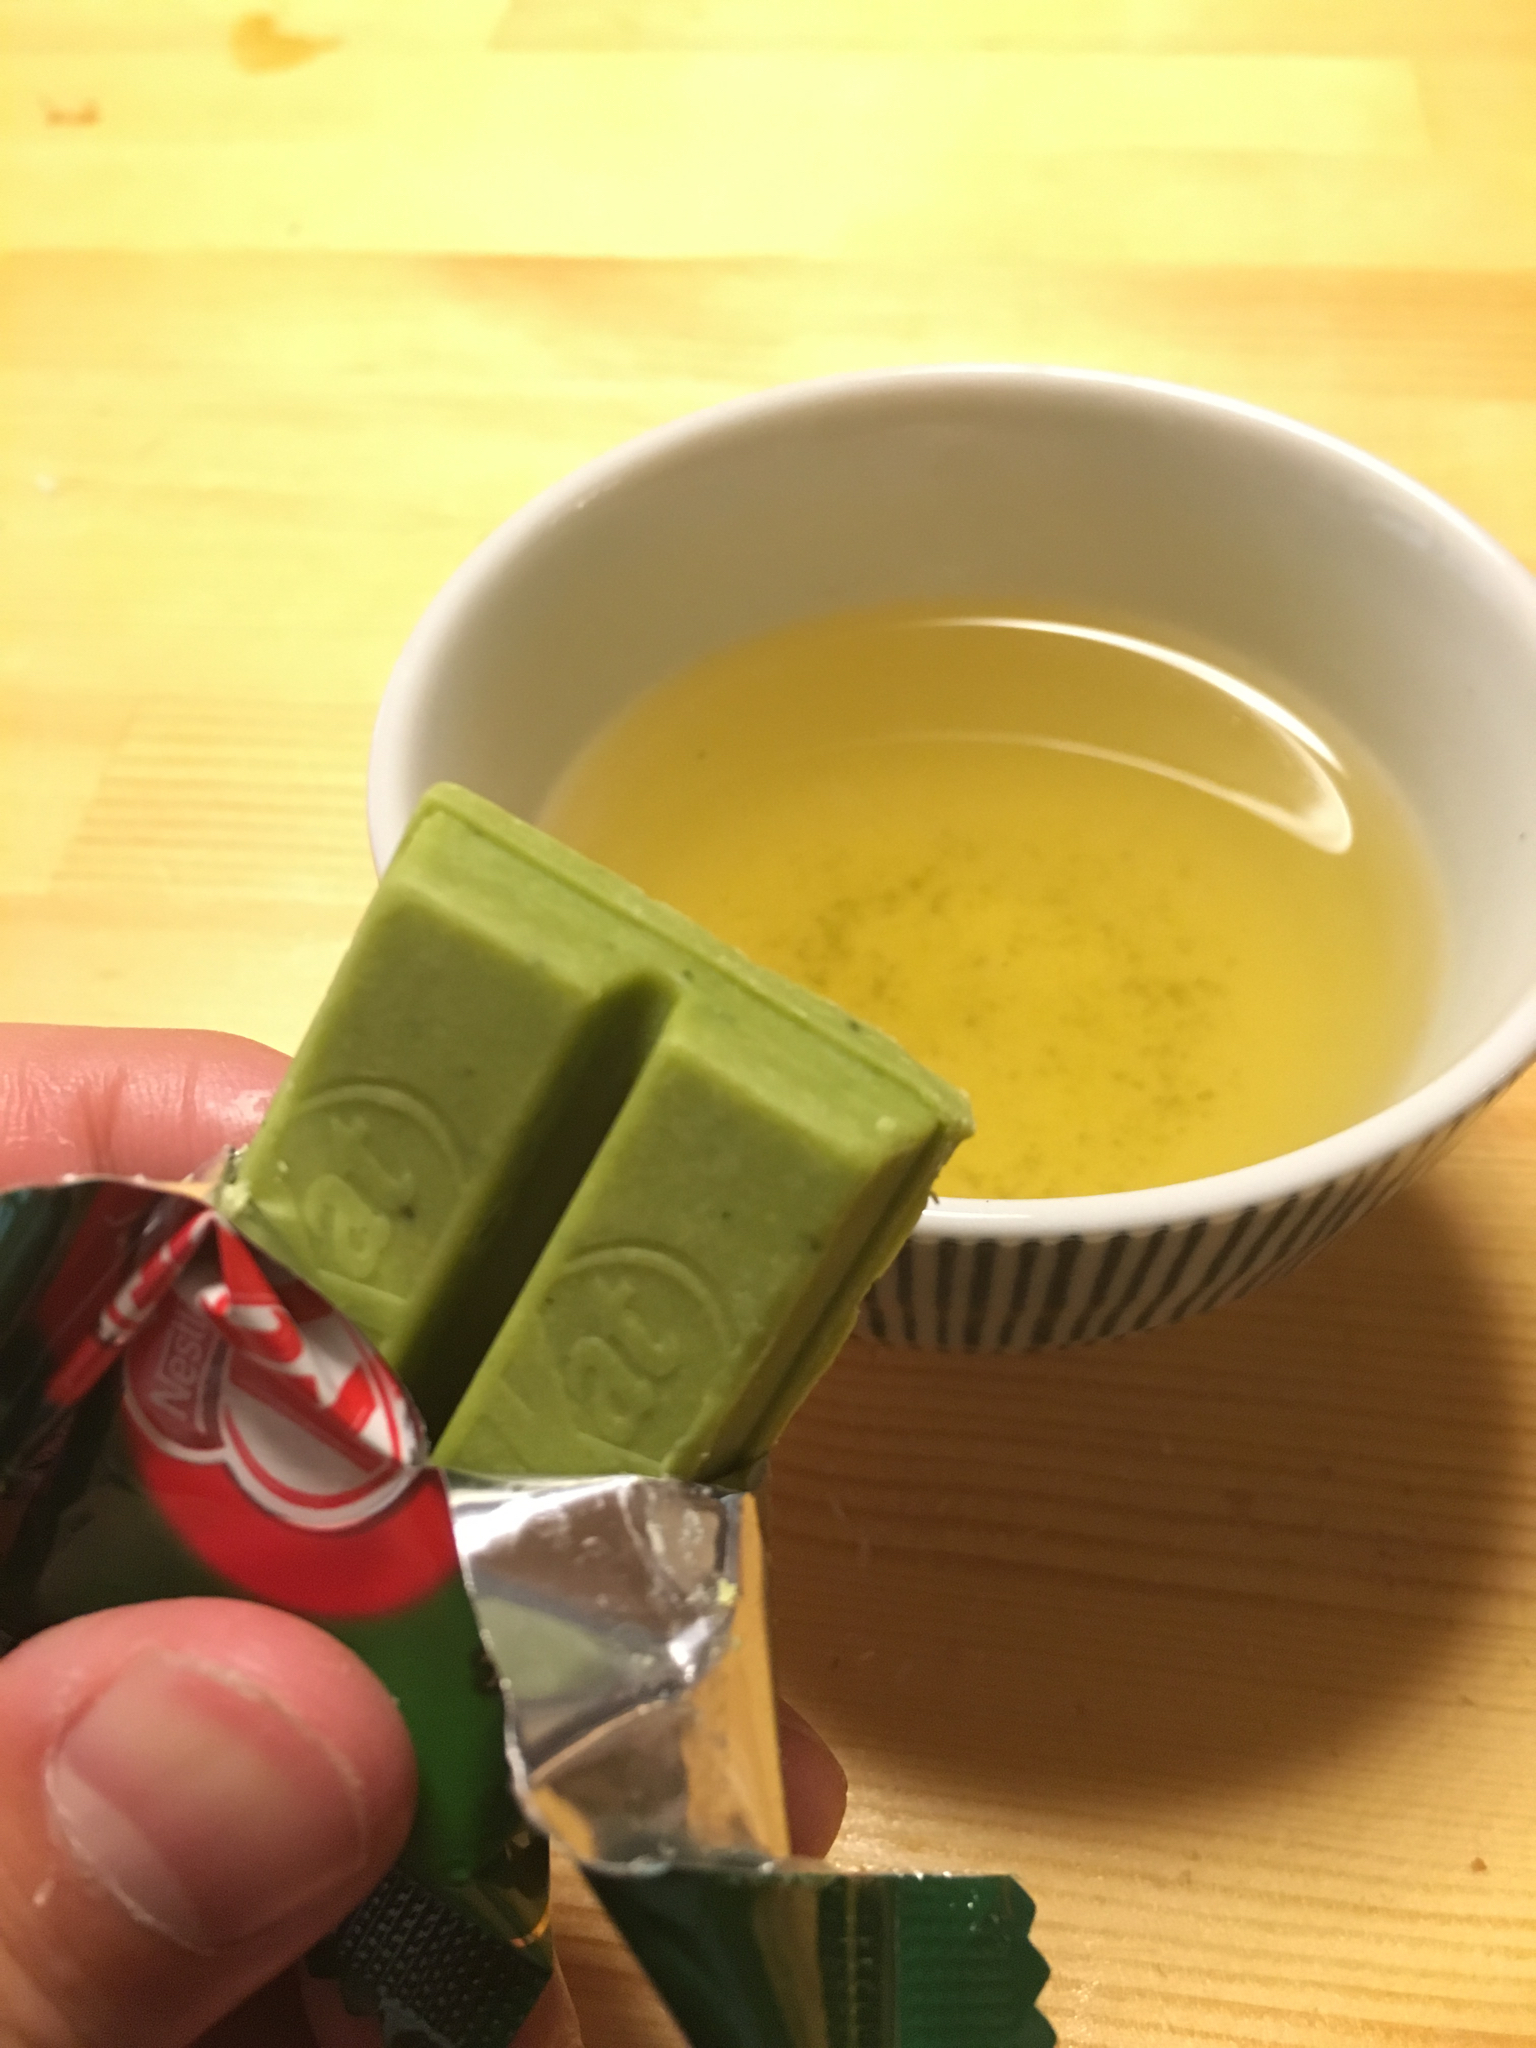 Green tea Kit Kat for dessert